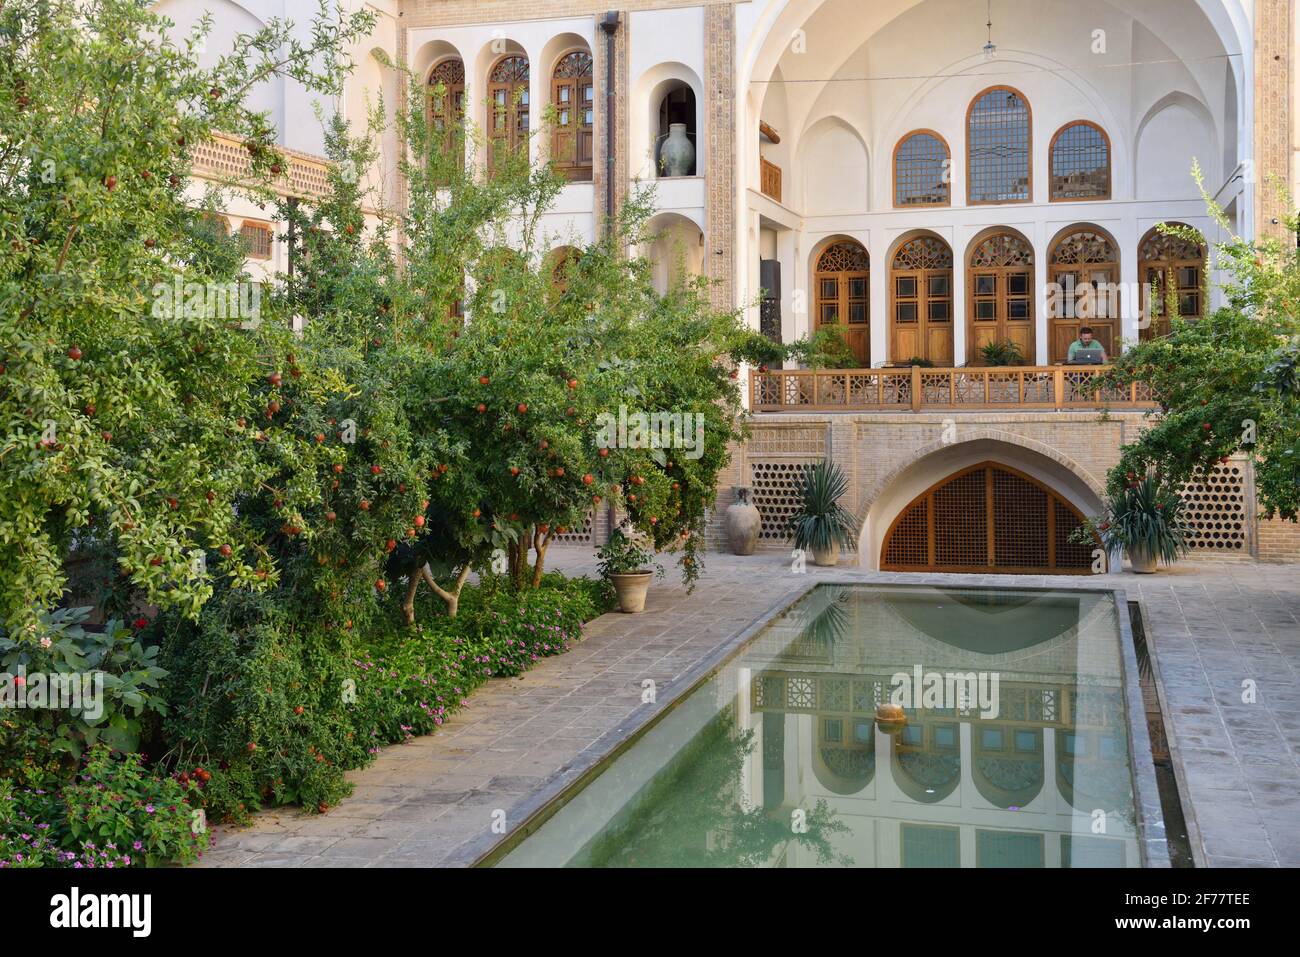 Iran, Kashan, Manouchehri House Hotel Stock Photo